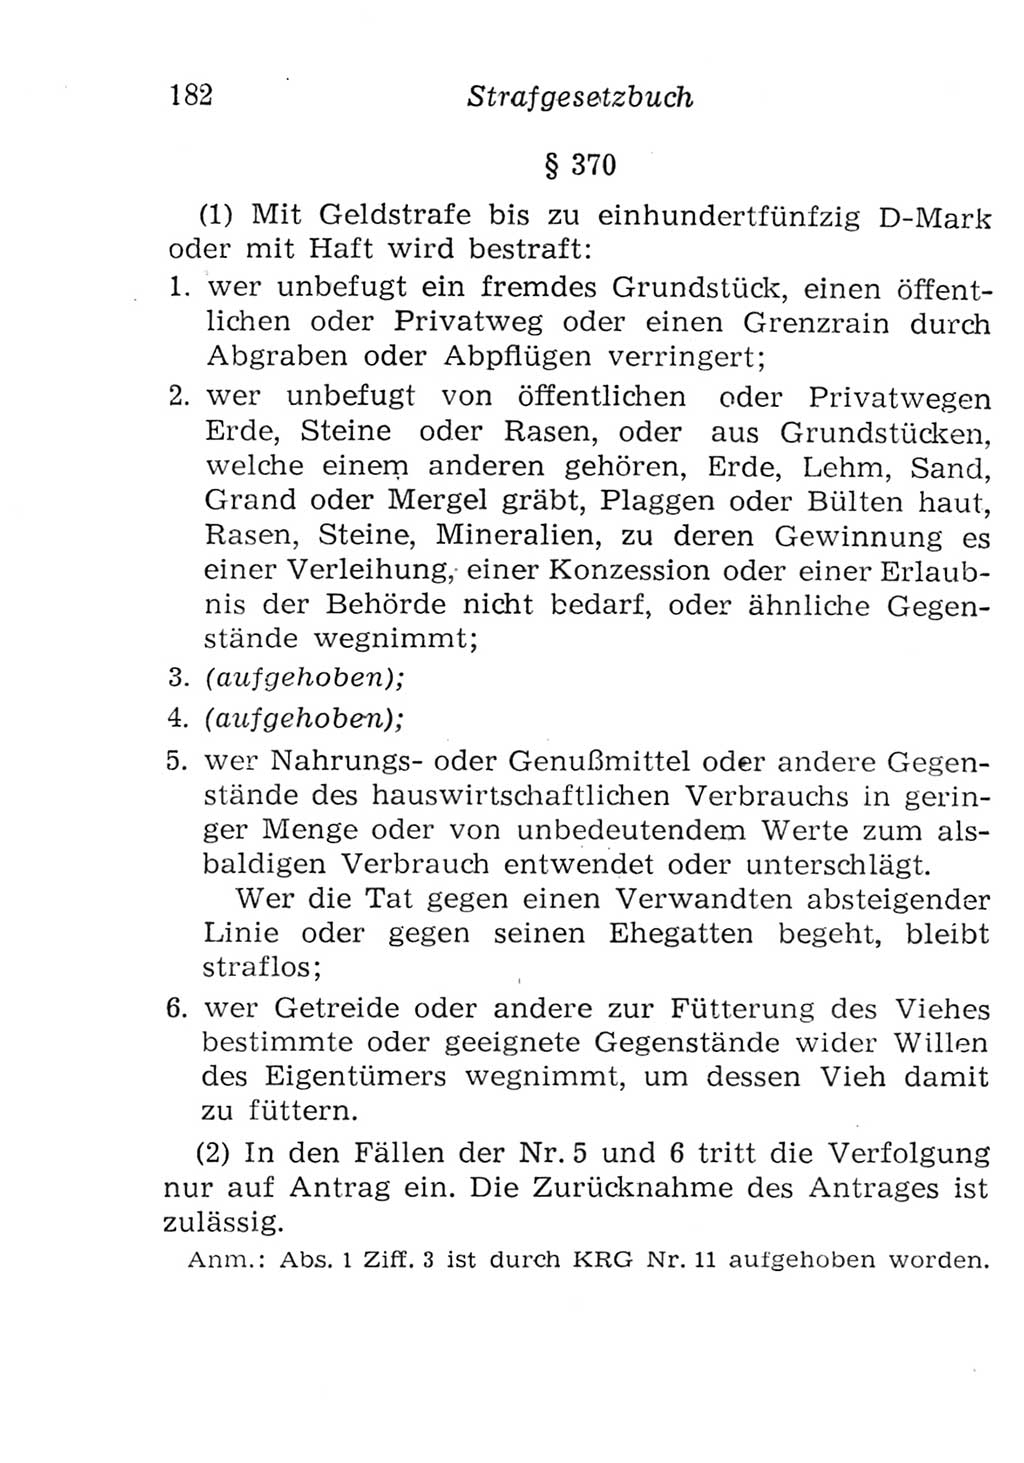 Strafgesetzbuch (StGB) und andere Strafgesetze [Deutsche Demokratische Republik (DDR)] 1957, Seite 182 (StGB Strafges. DDR 1957, S. 182)